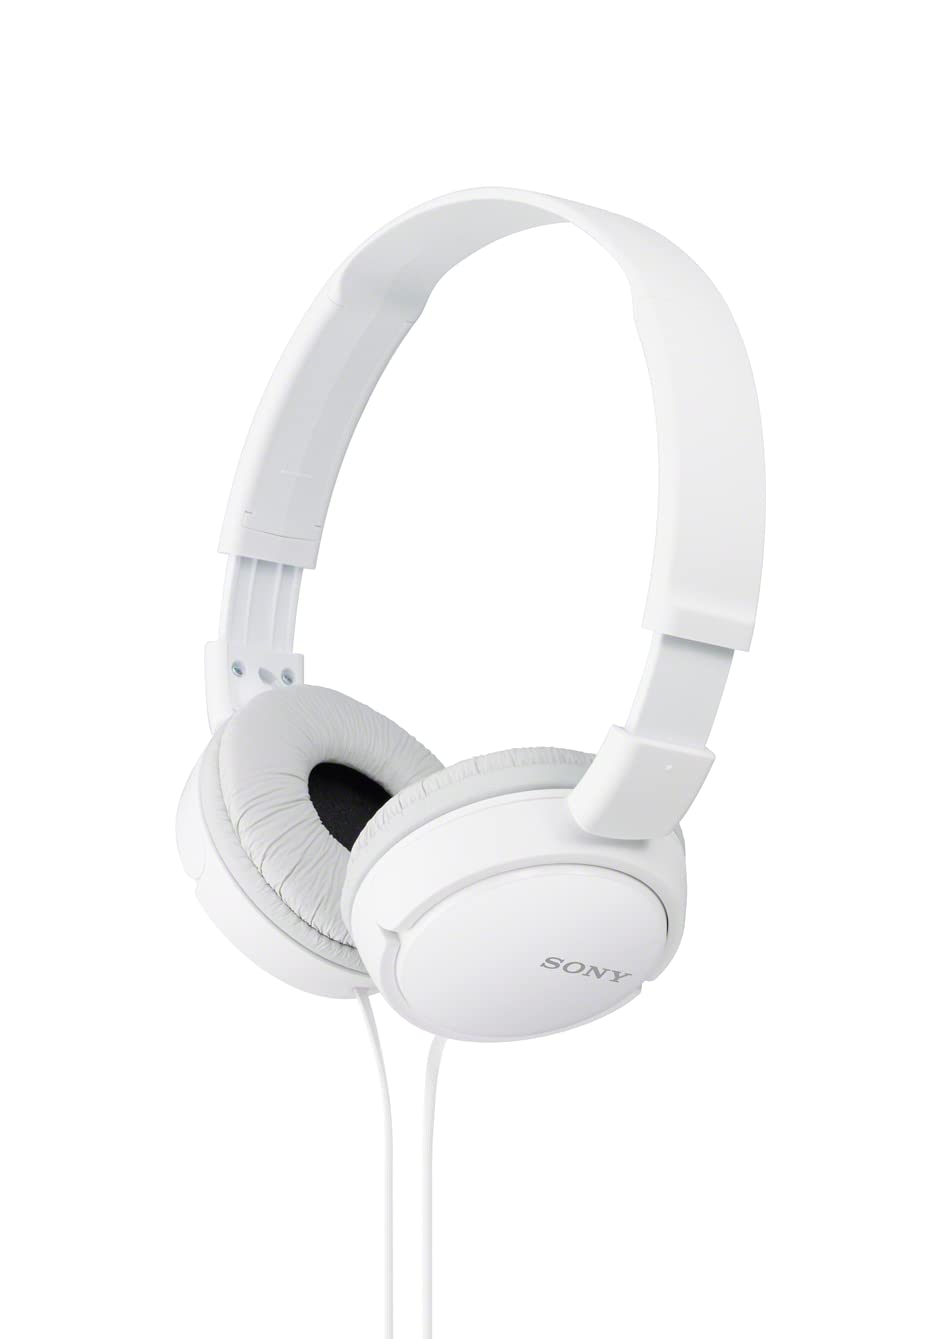 Sony سماعات الرأس MDR-ZX110 - أبيض